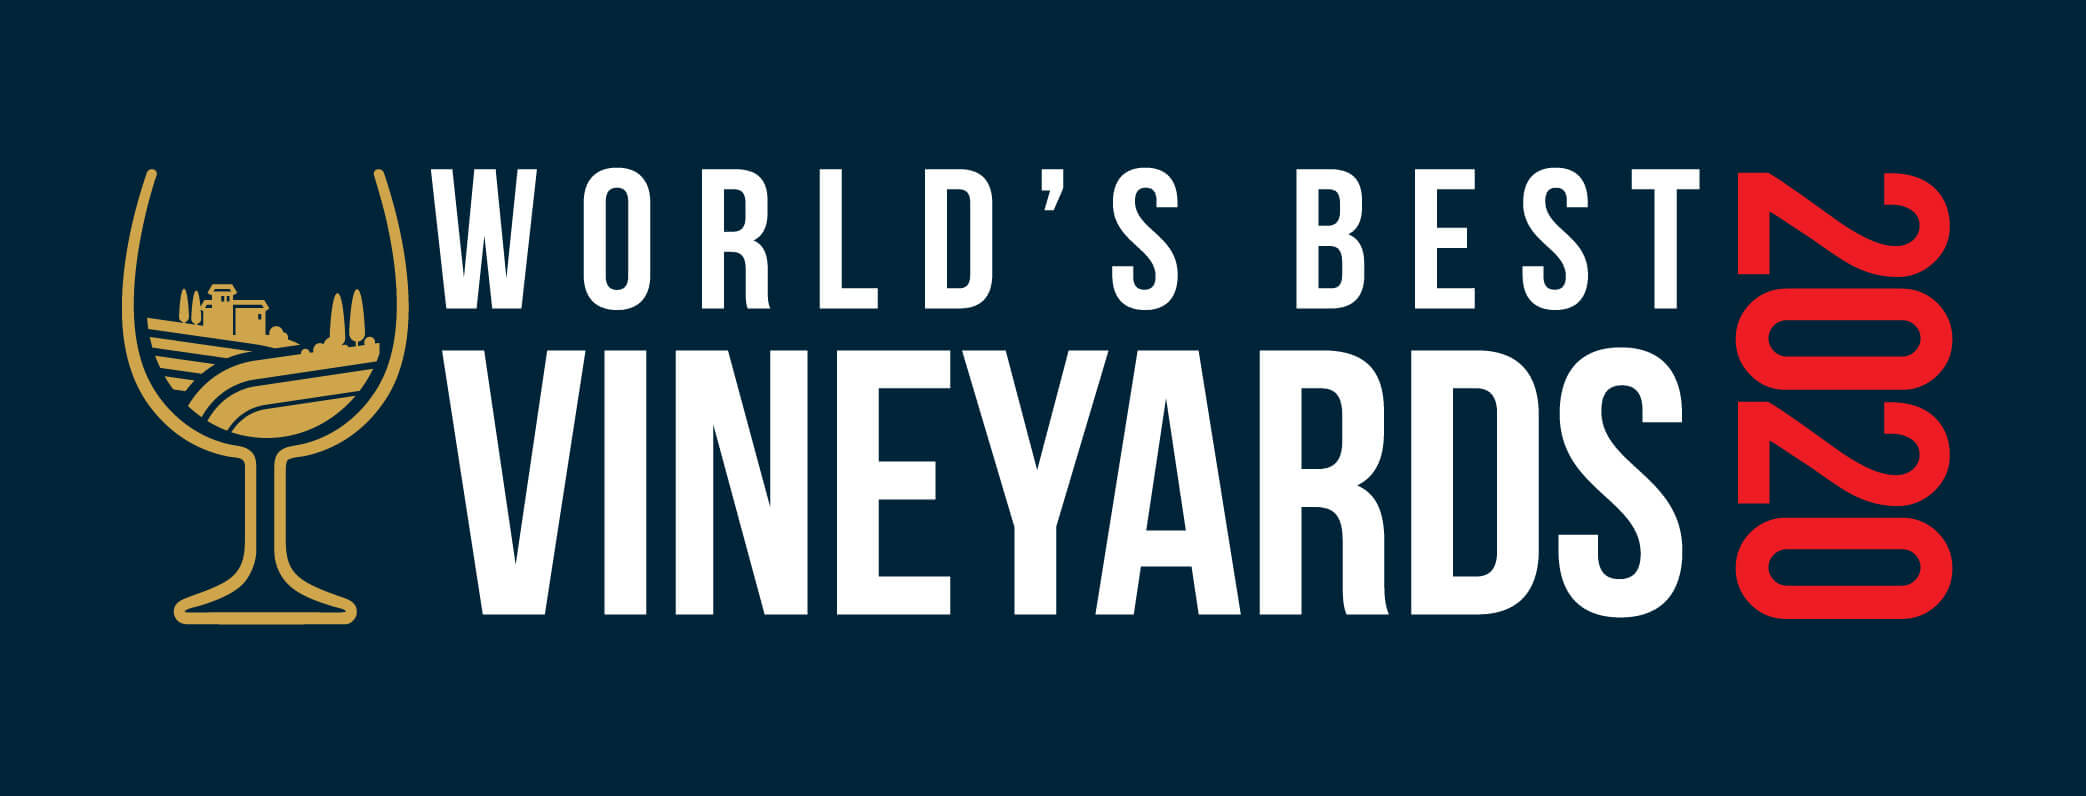 World's Best Vineyards Logo.